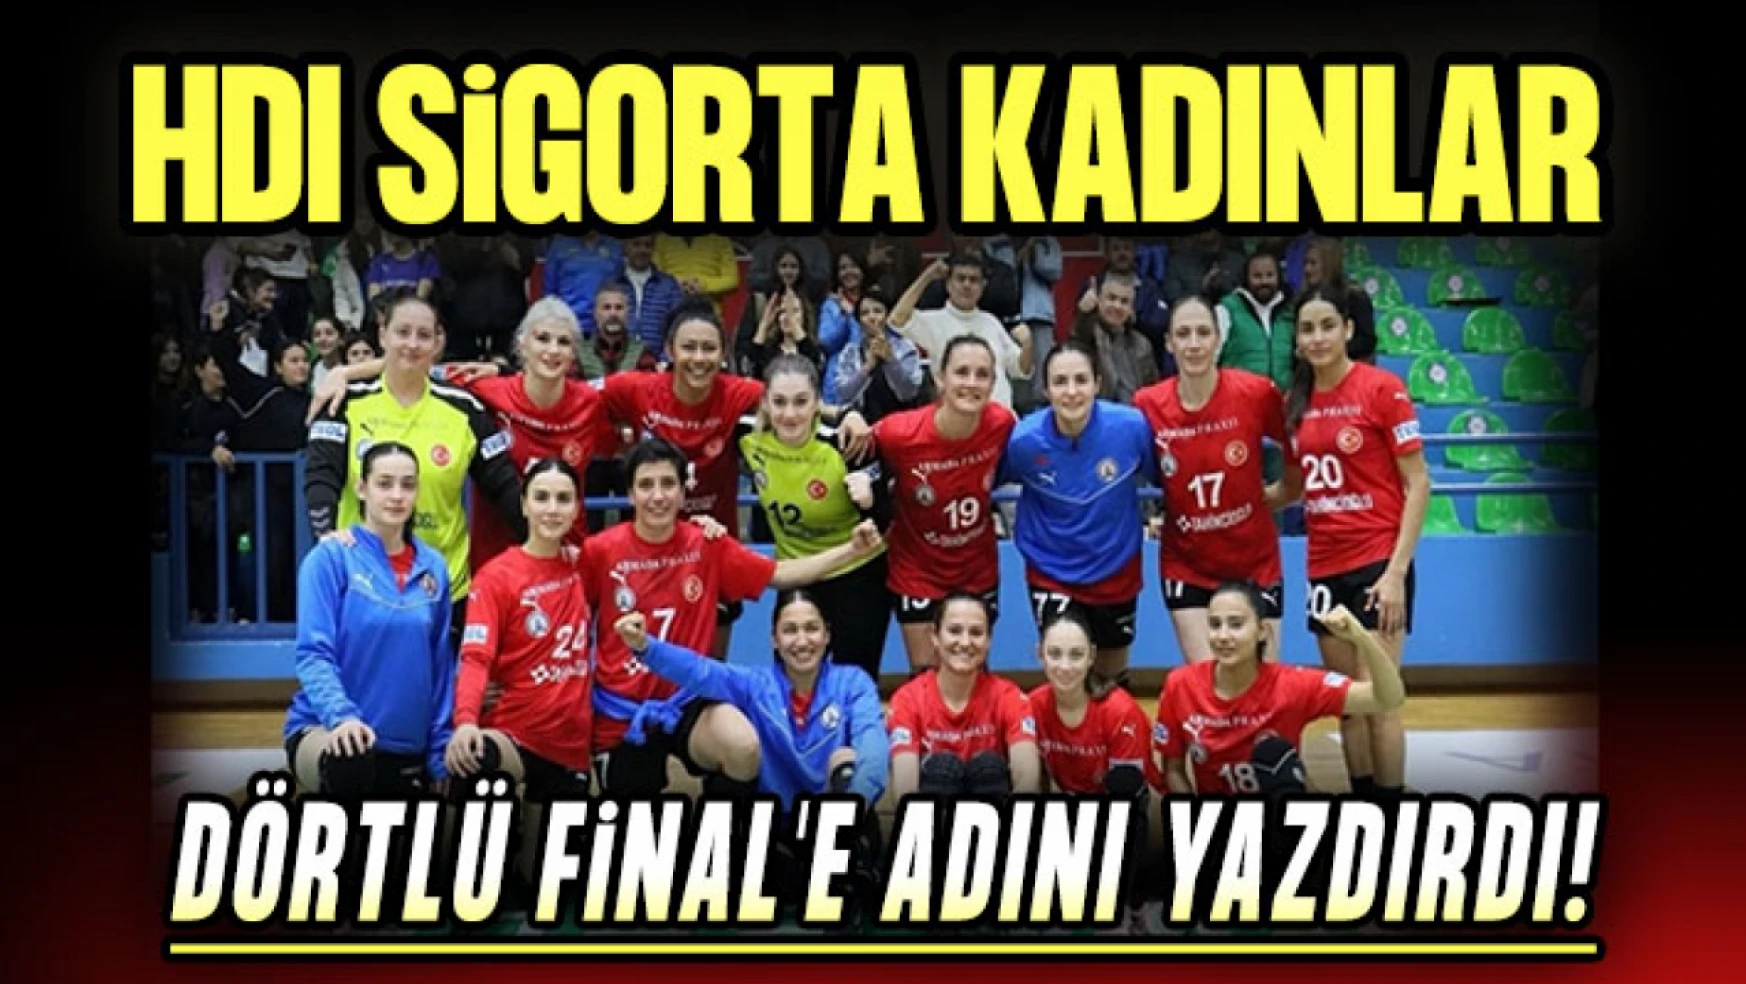 HDI Sigorta Kadınlar Dörtlü Final'e Adını Yazdırdı!